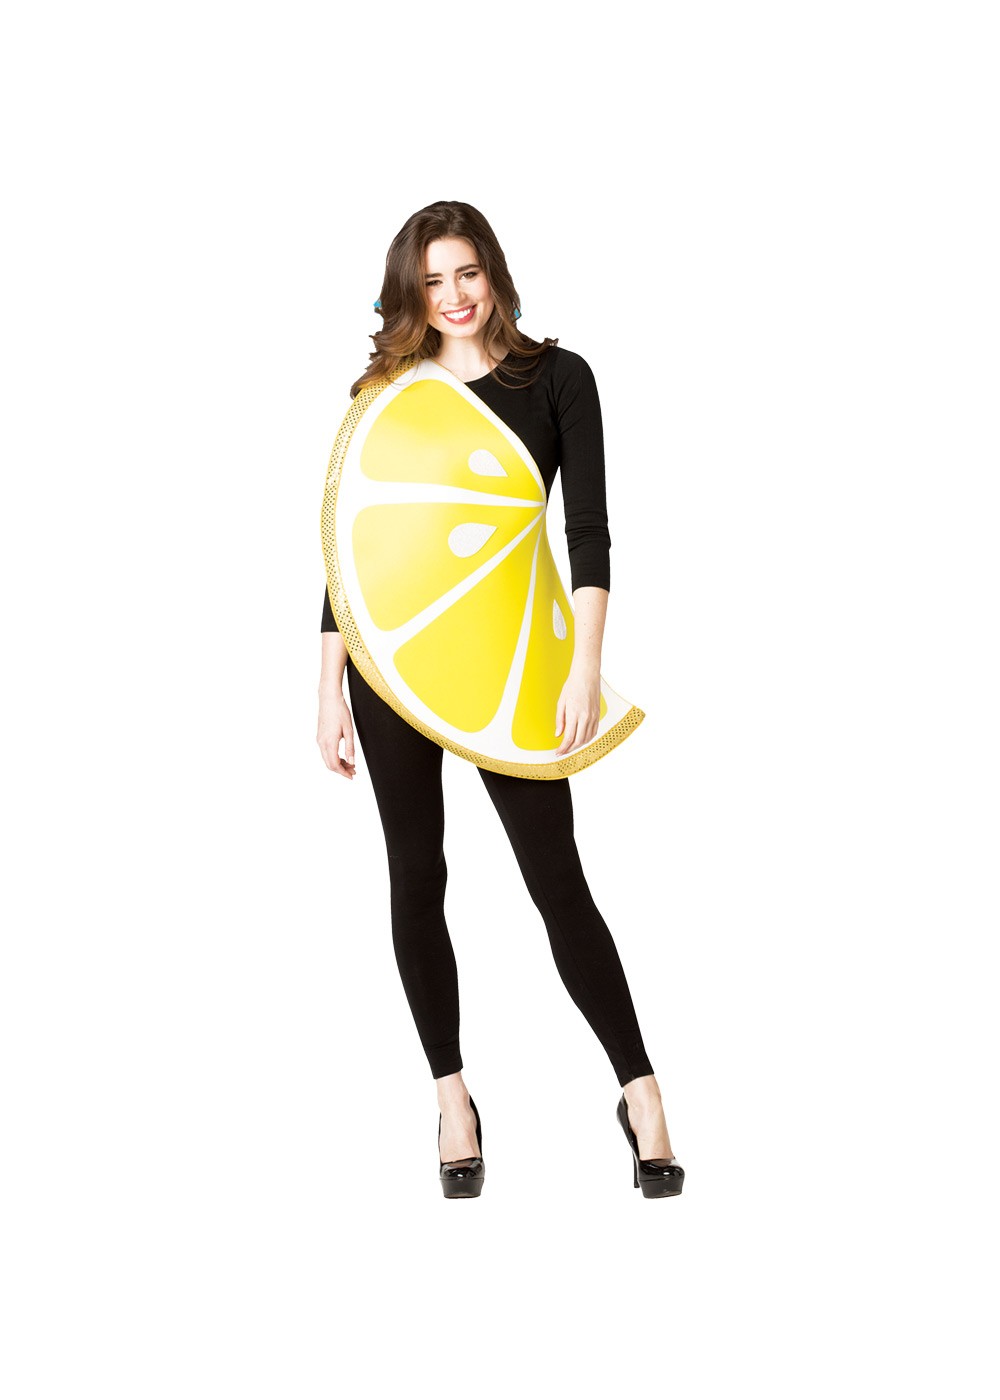 Womens Lemon Slice Costume